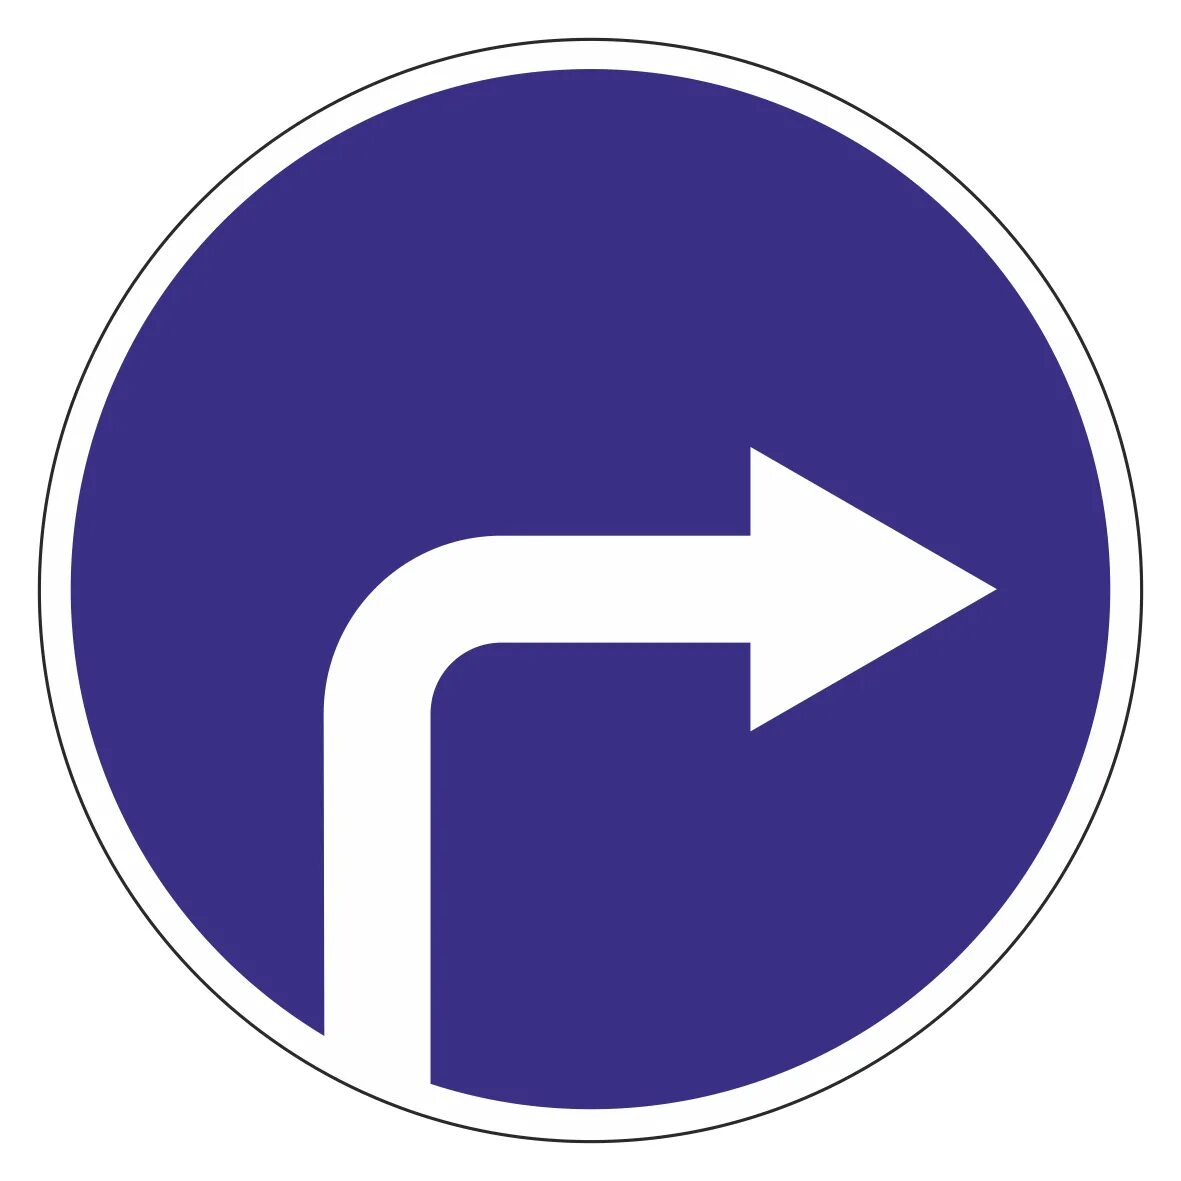 Знак движение 1. Дорожный знак 4.1.3 движение налево. Дорожный знак 4.1.2 движение направо. Предписывающие знаки 4.1.4. Знак поворот только направо.